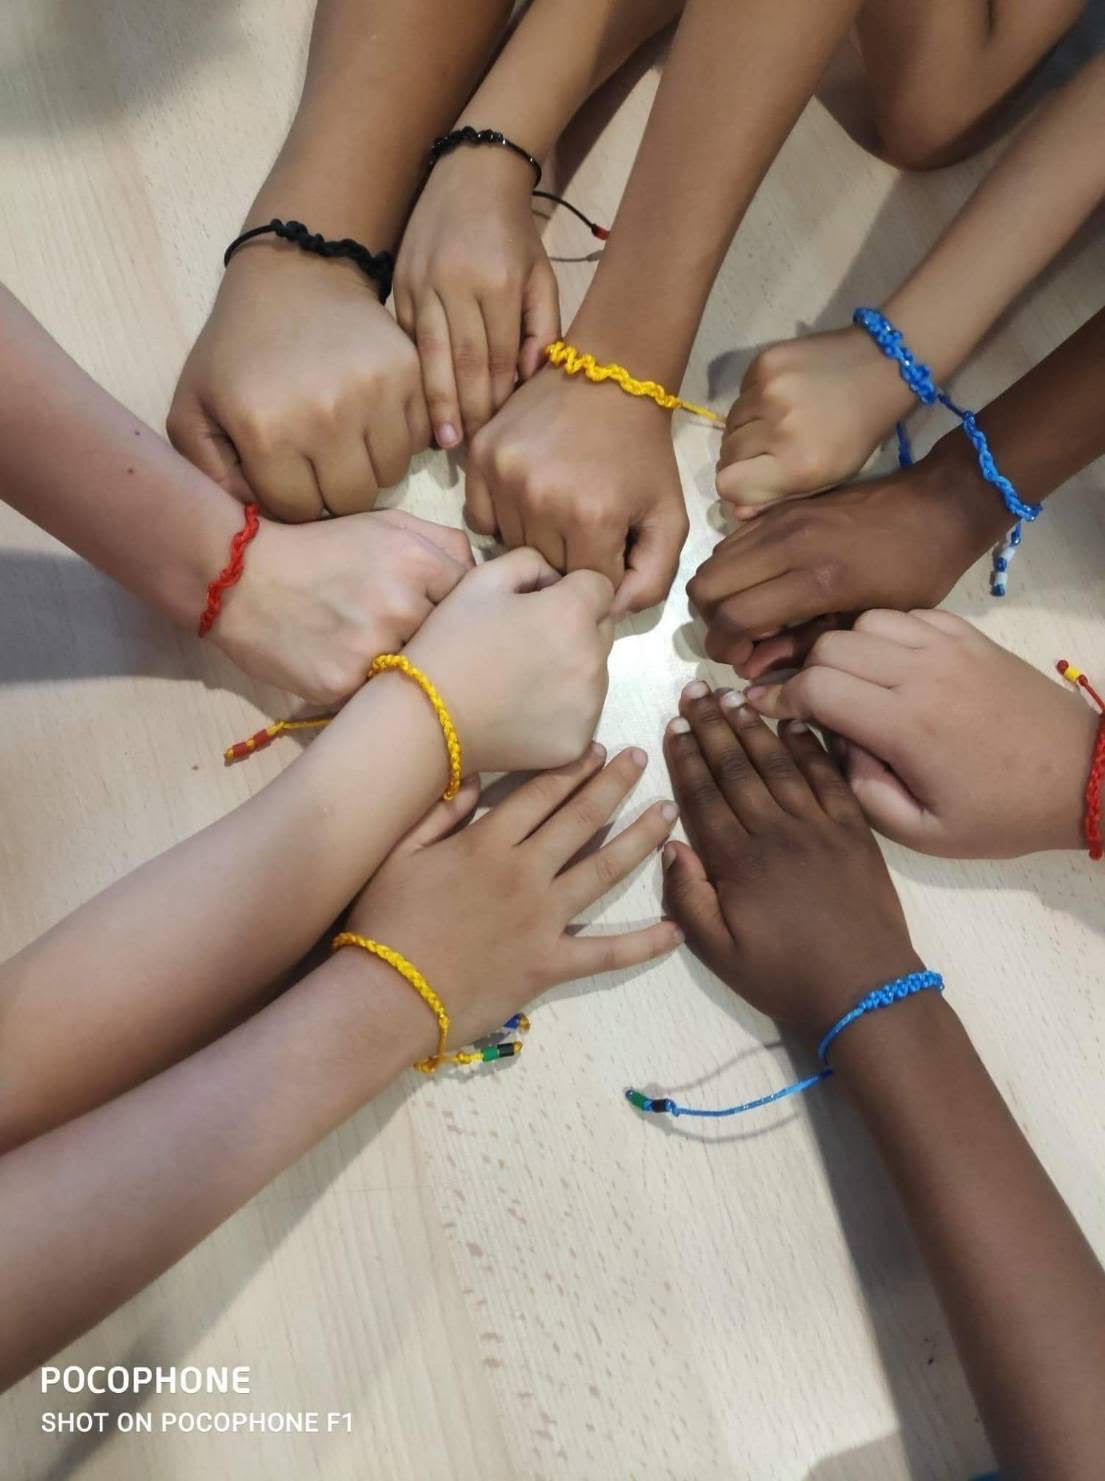 法國亭林中文學校於7月11日舉辦為期6天的夏令營活動，圖為學員們展示編織的手環。